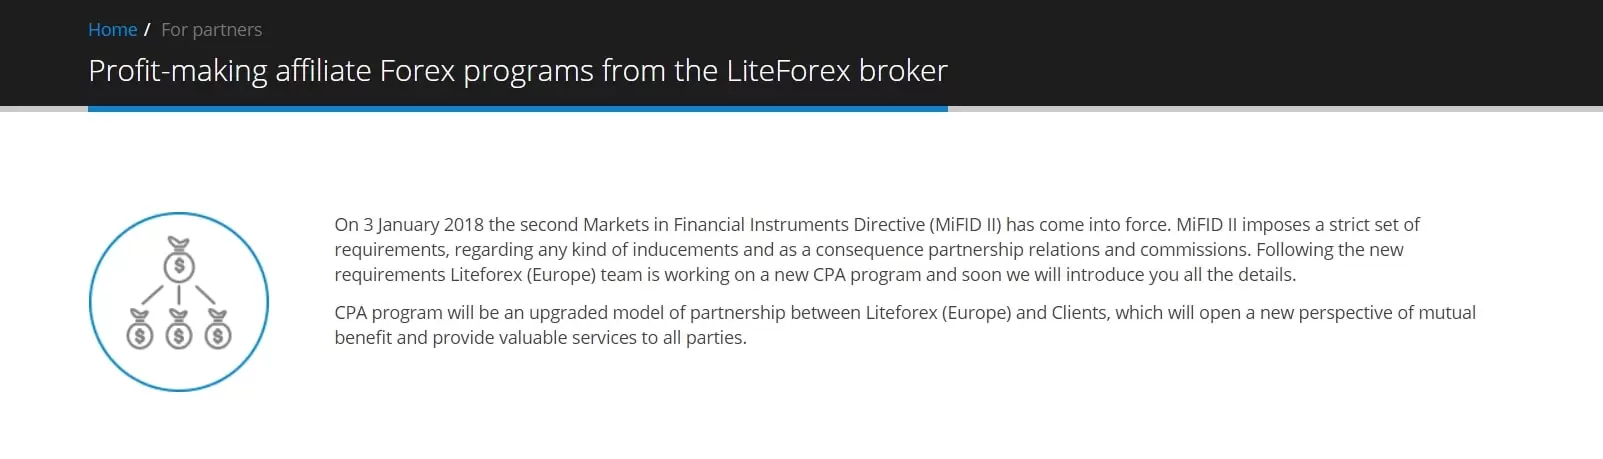 White broker LiteForex